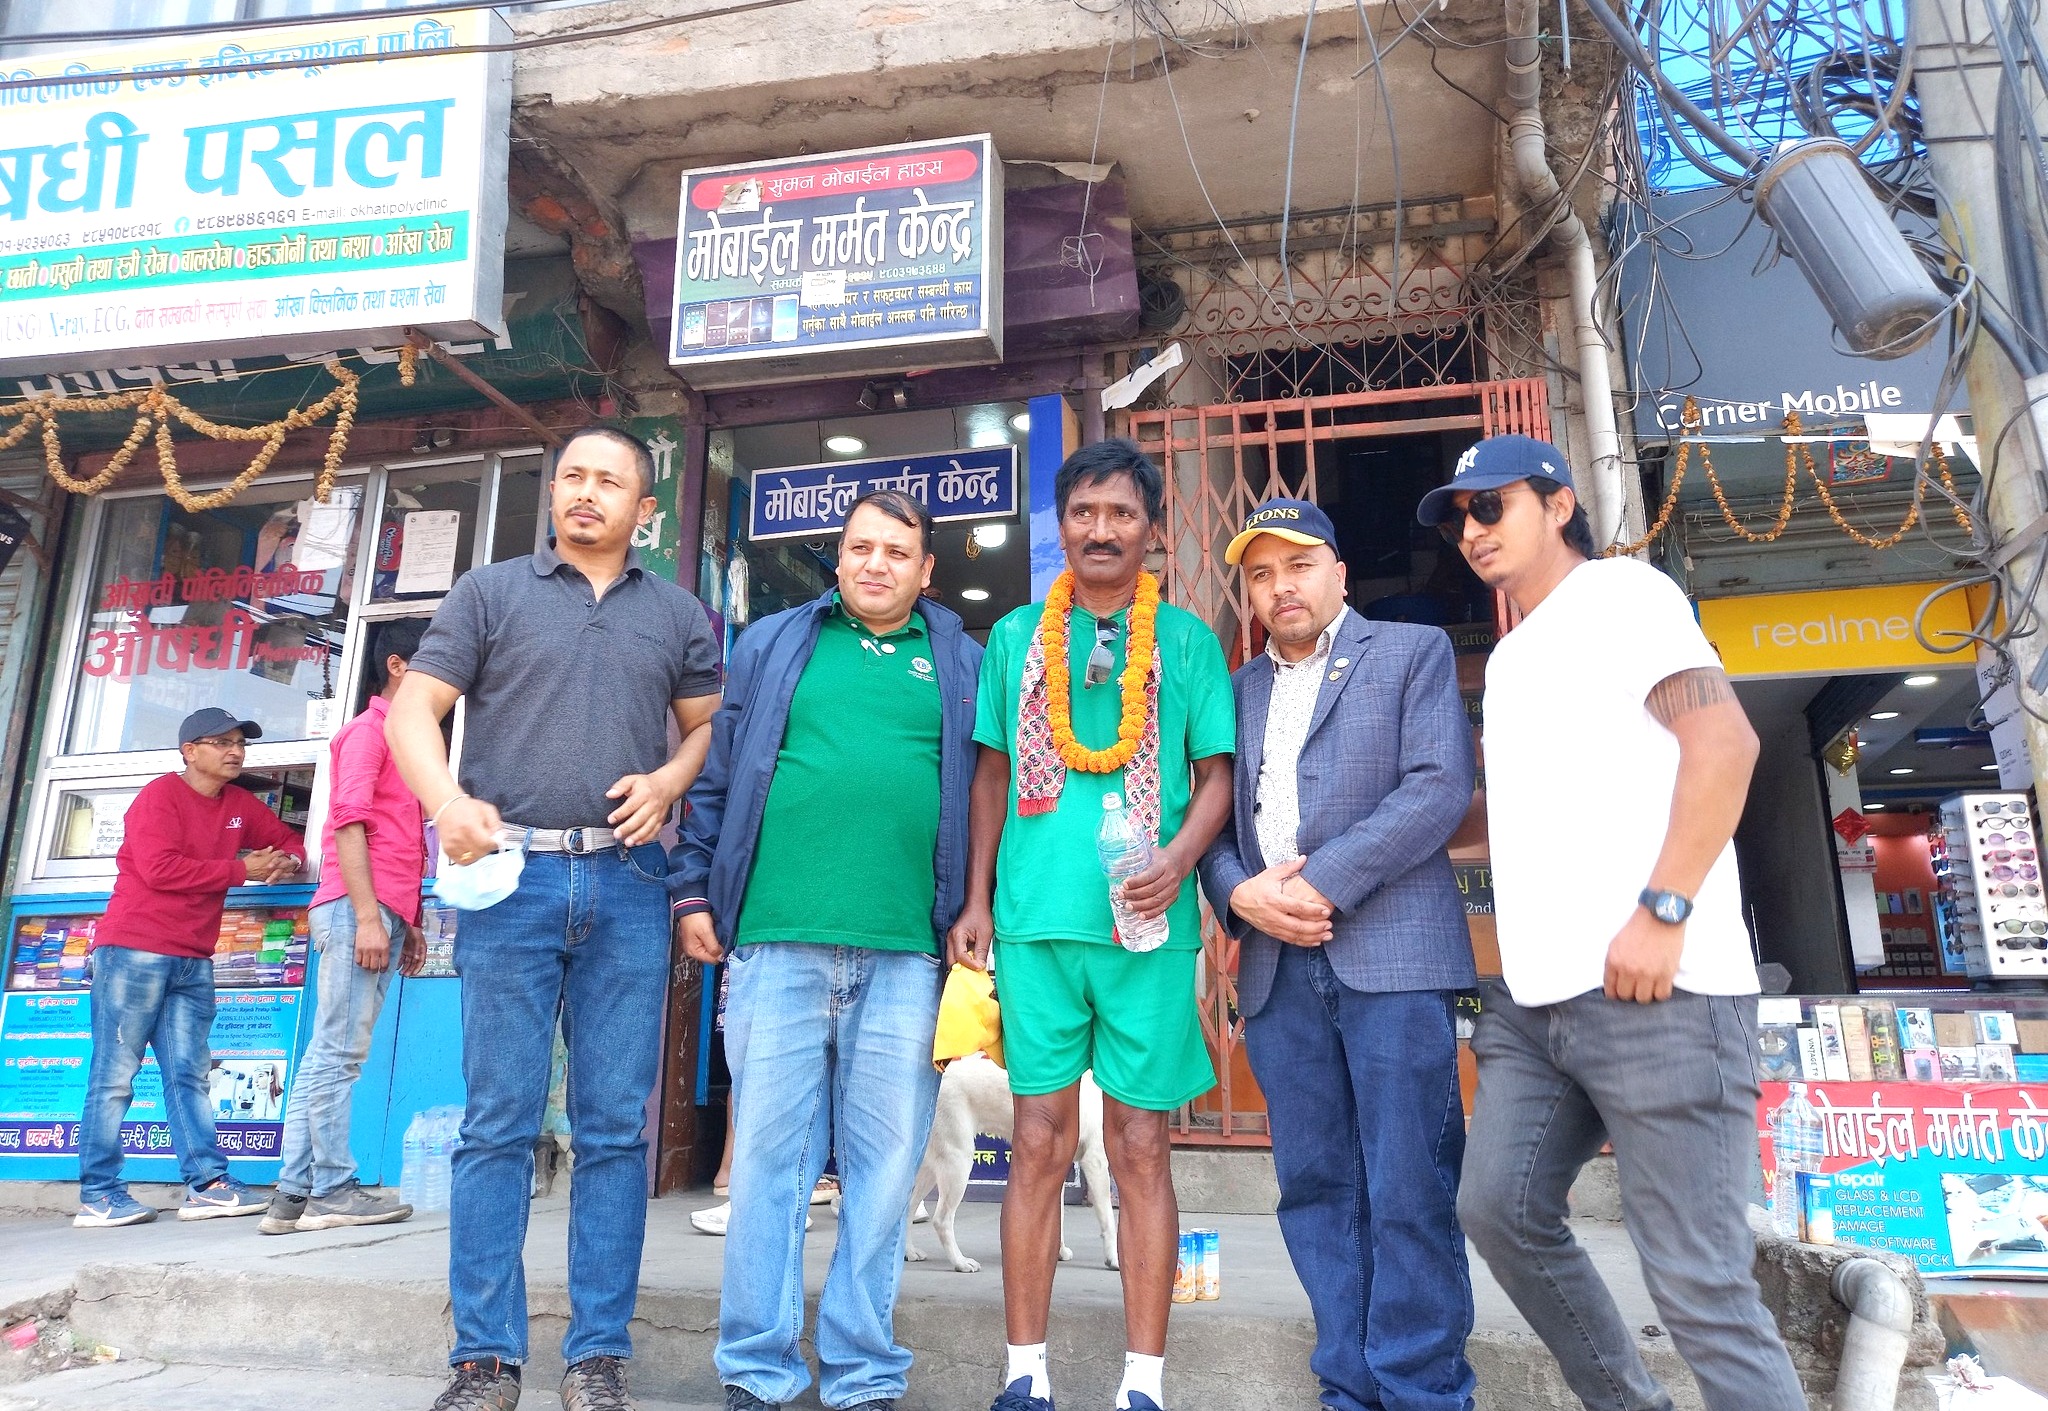 बर्दियाका ६५ बर्षिय पुस्करको सफलतापूर्वक काठमांडौें रिङरोडमा म्याराथन दौड